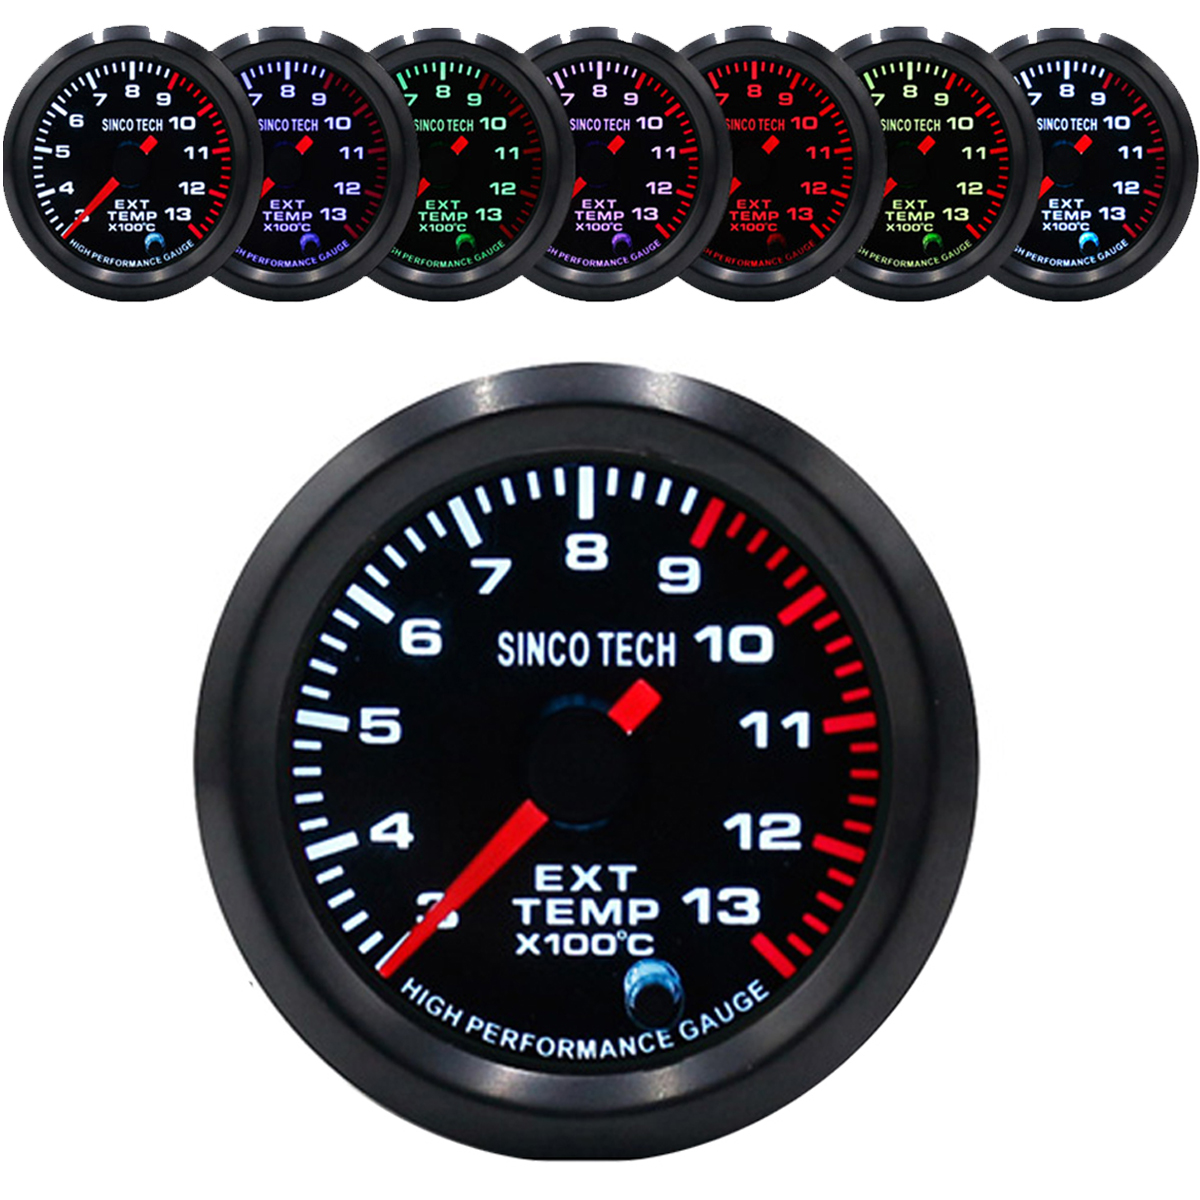 Racing Car Turbo/Boost/Egt Exhaust/Temp/Oil Pressure Gauge Meter 7 Colors